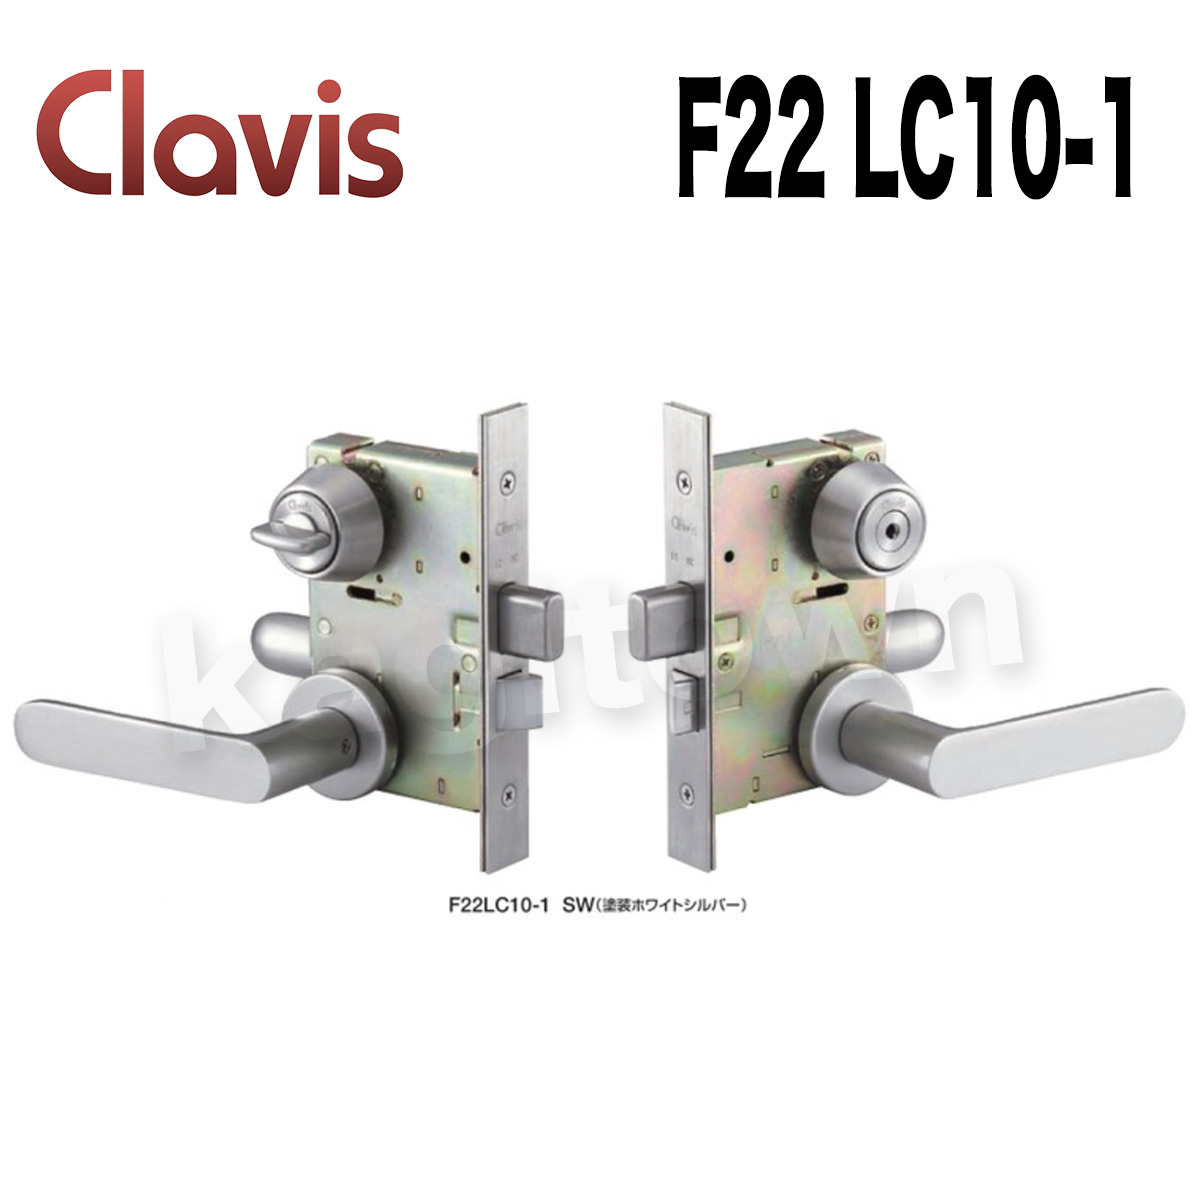 Clavis F22 LC10-1【クラビス】レバーハンドル錠 納期1~3週間